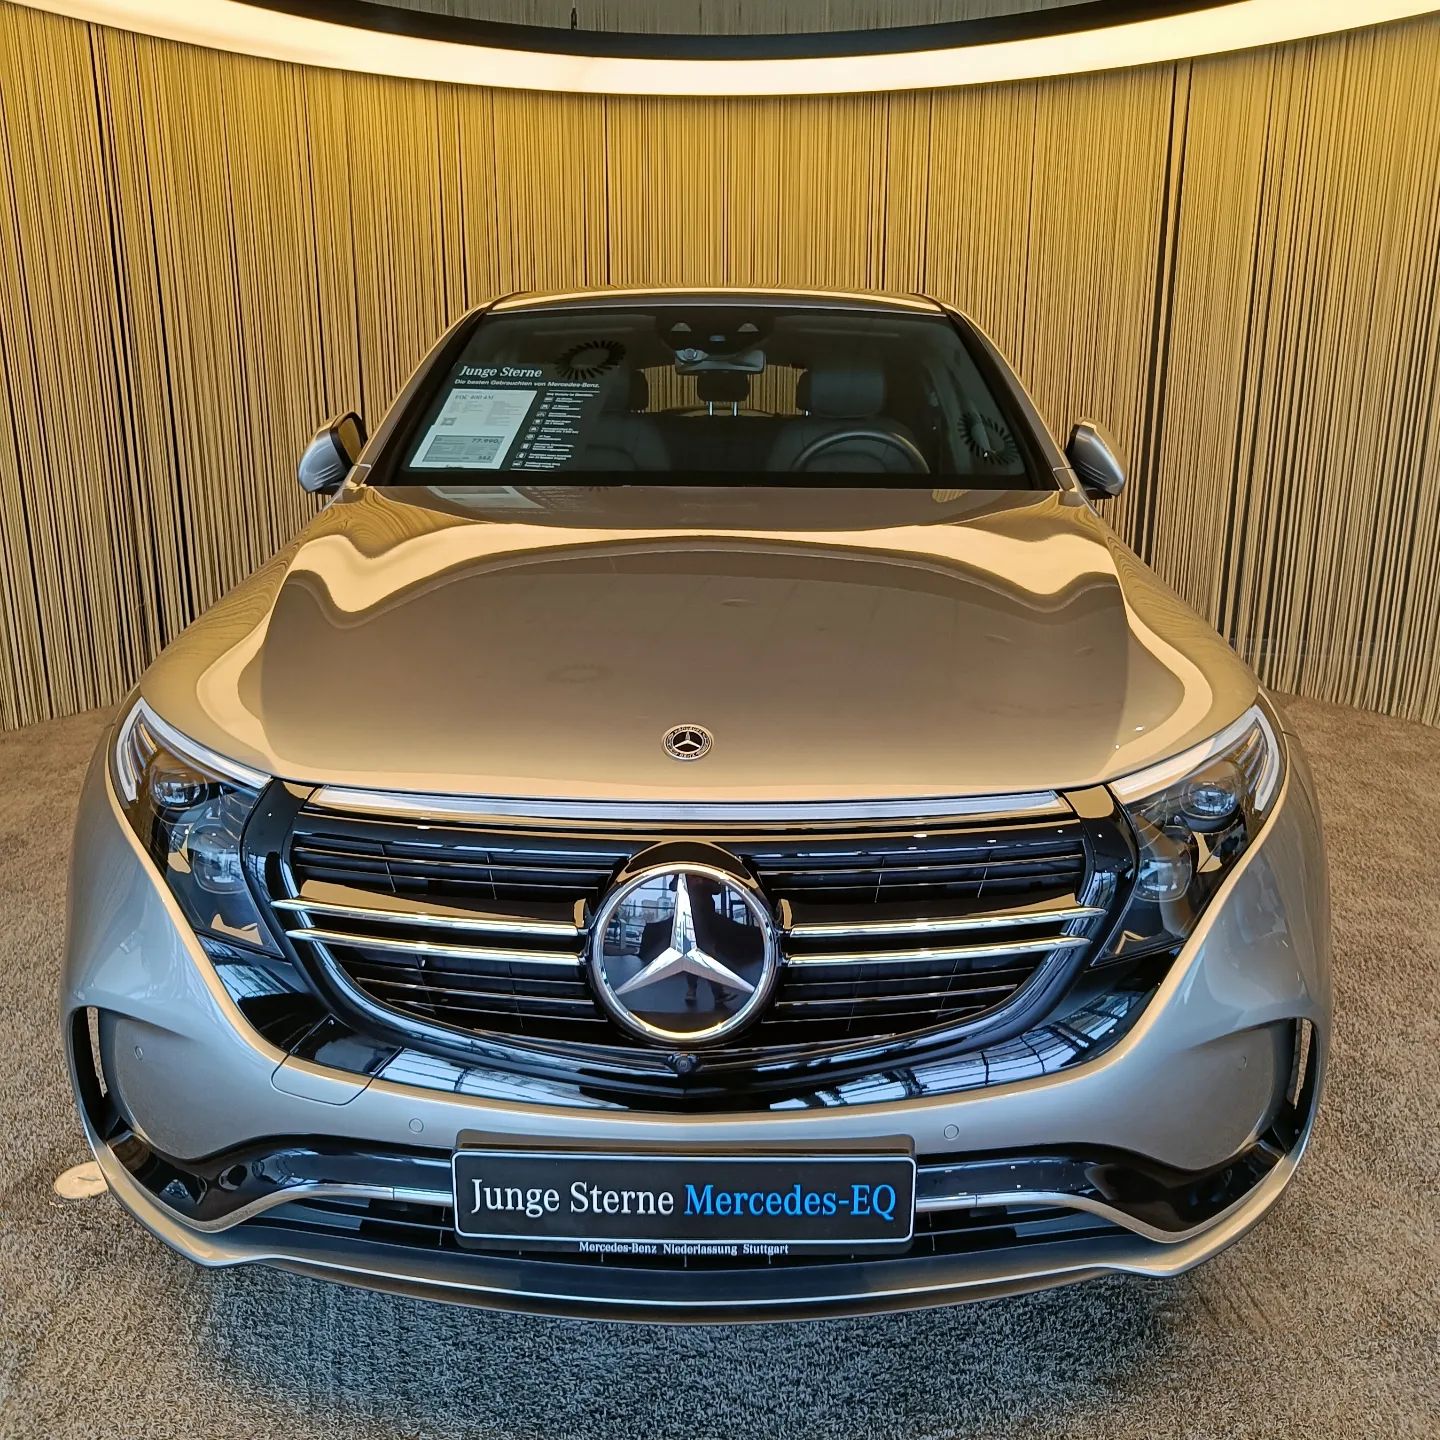 Mercedes-Benz in Stuggi. 😎